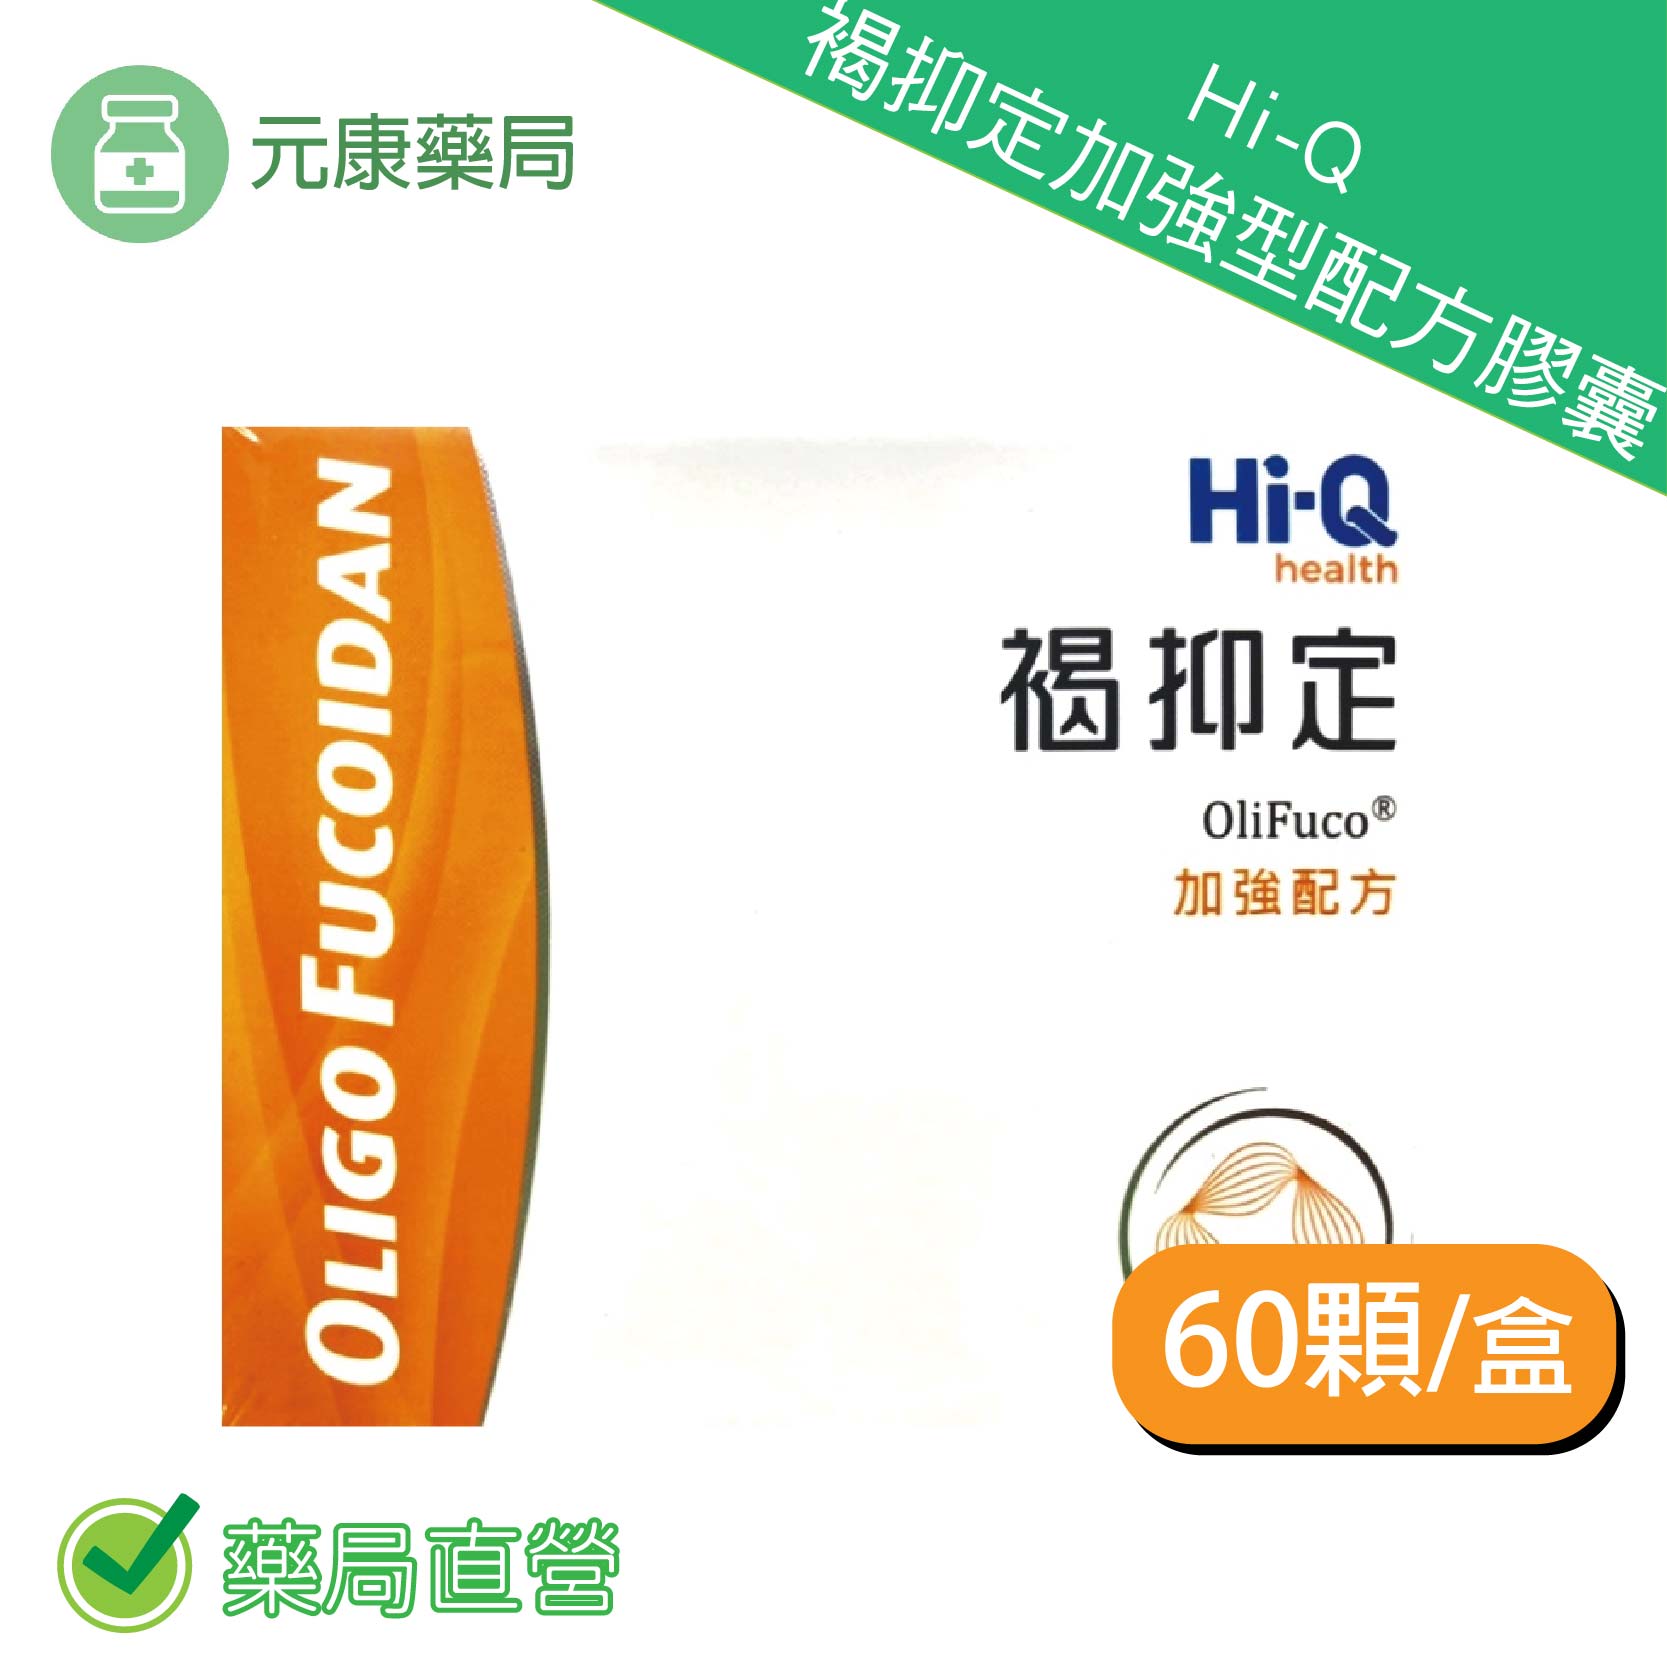 中華海洋褐抑定加強配方(Hi-Q褐藻醣膠)60顆/盒